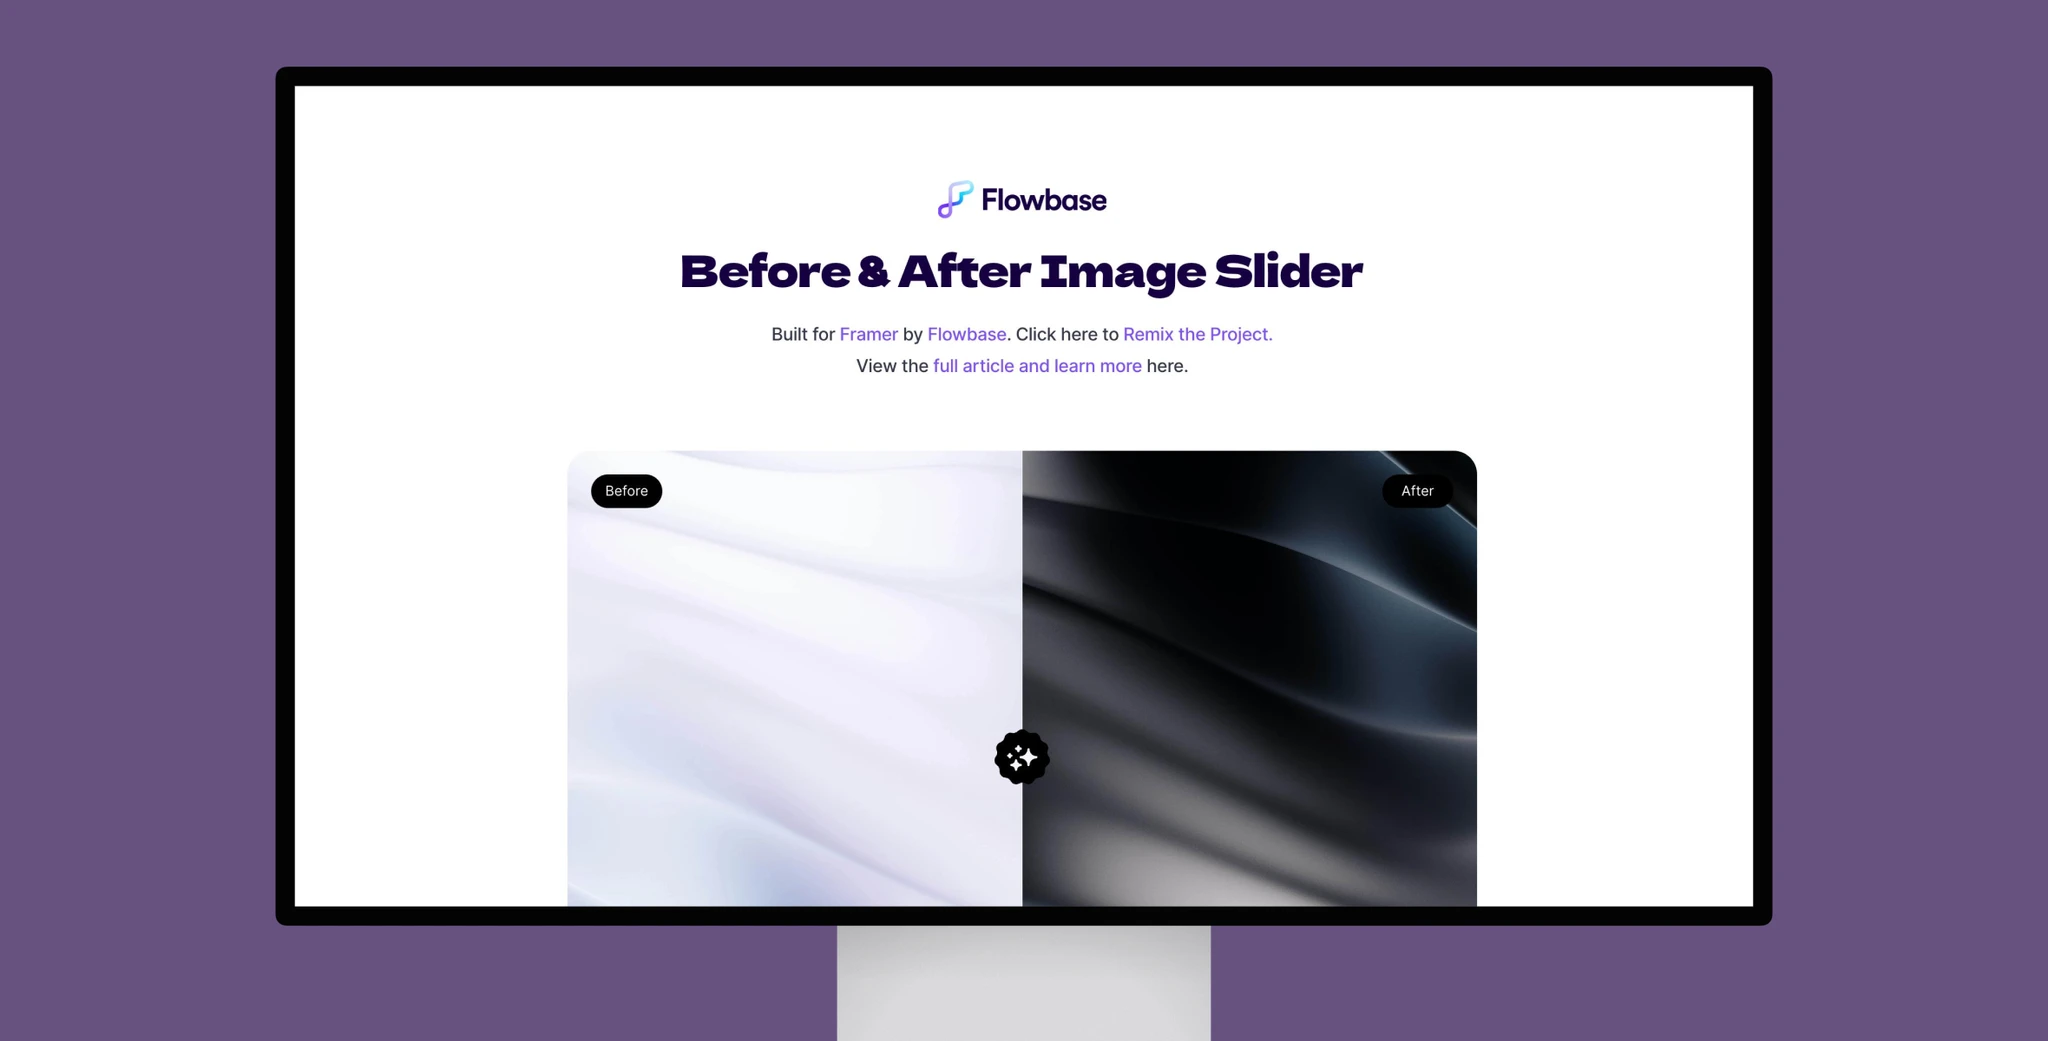 Before & After Image Slider